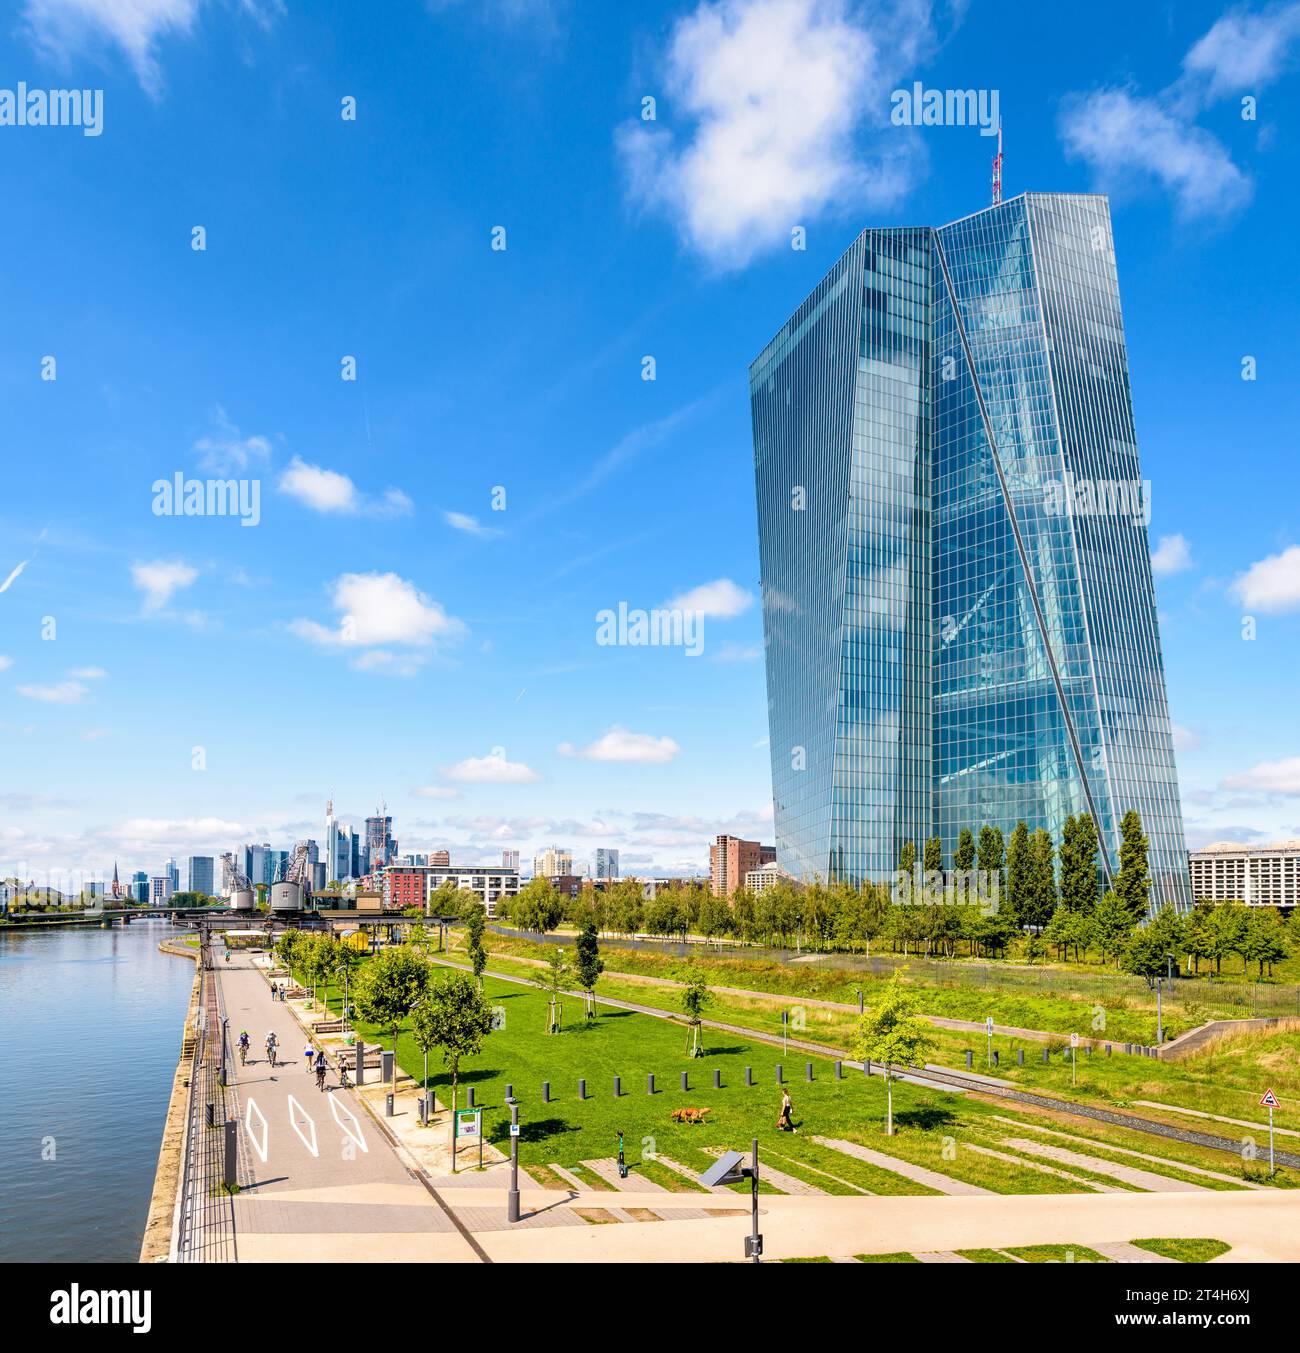 Vue est du bâtiment Skytower à Francfort, Allemagne, siège de la Banque centrale européenne (BCE), avec les gratte-ciel du quartier financier. Banque D'Images